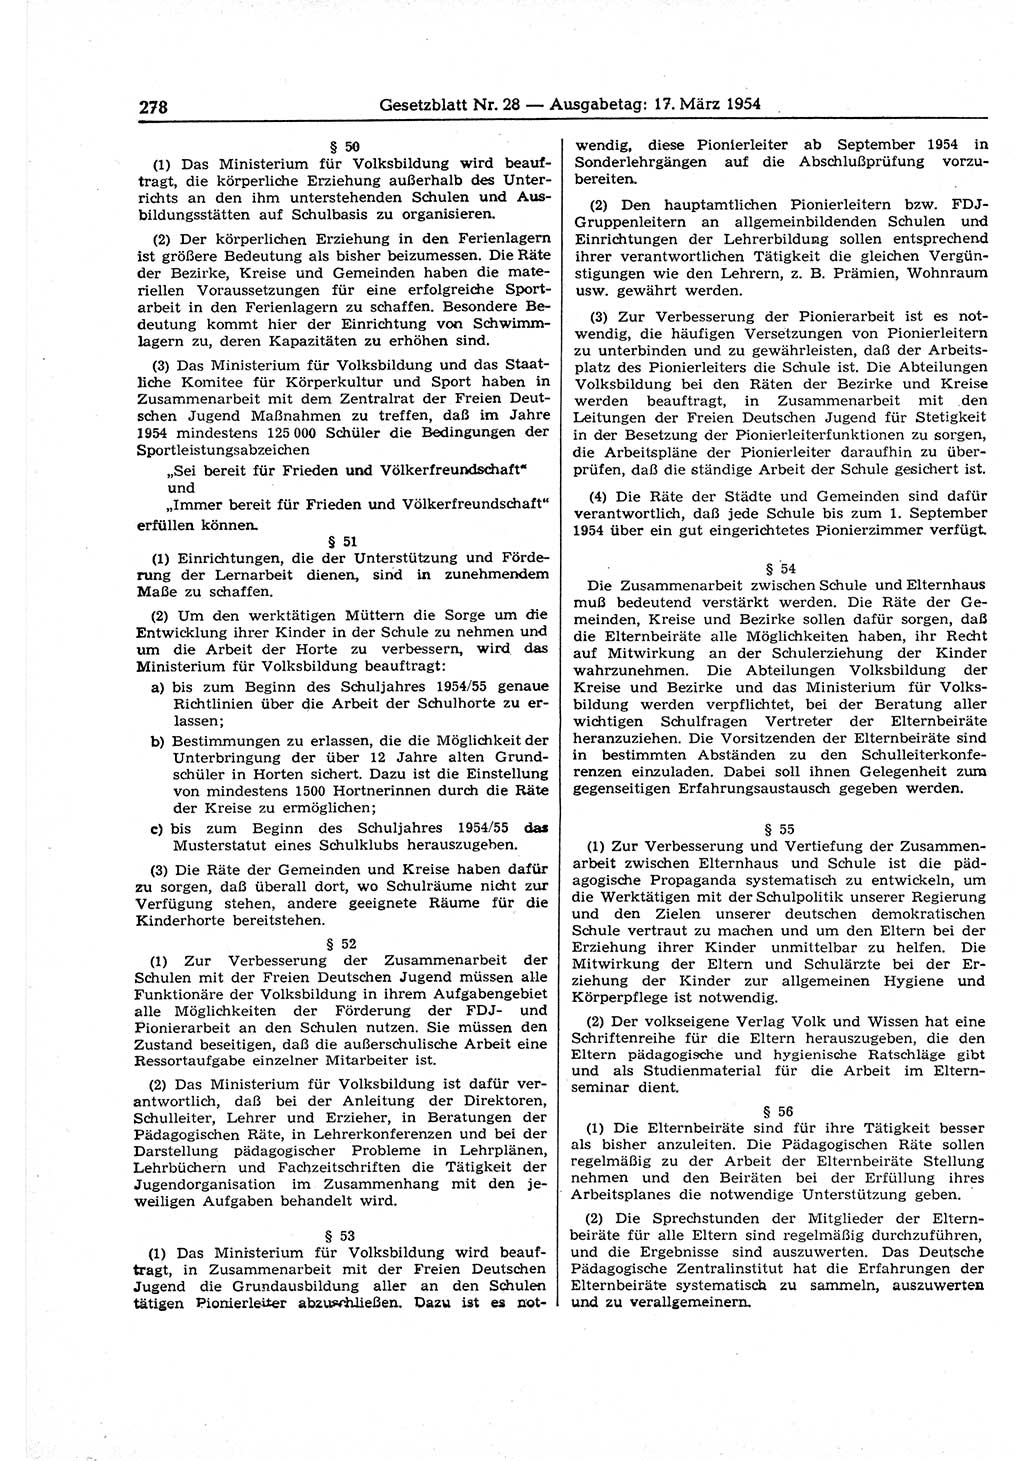 Gesetzblatt (GBl.) der Deutschen Demokratischen Republik (DDR) 1954, Seite 278 (GBl. DDR 1954, S. 278)